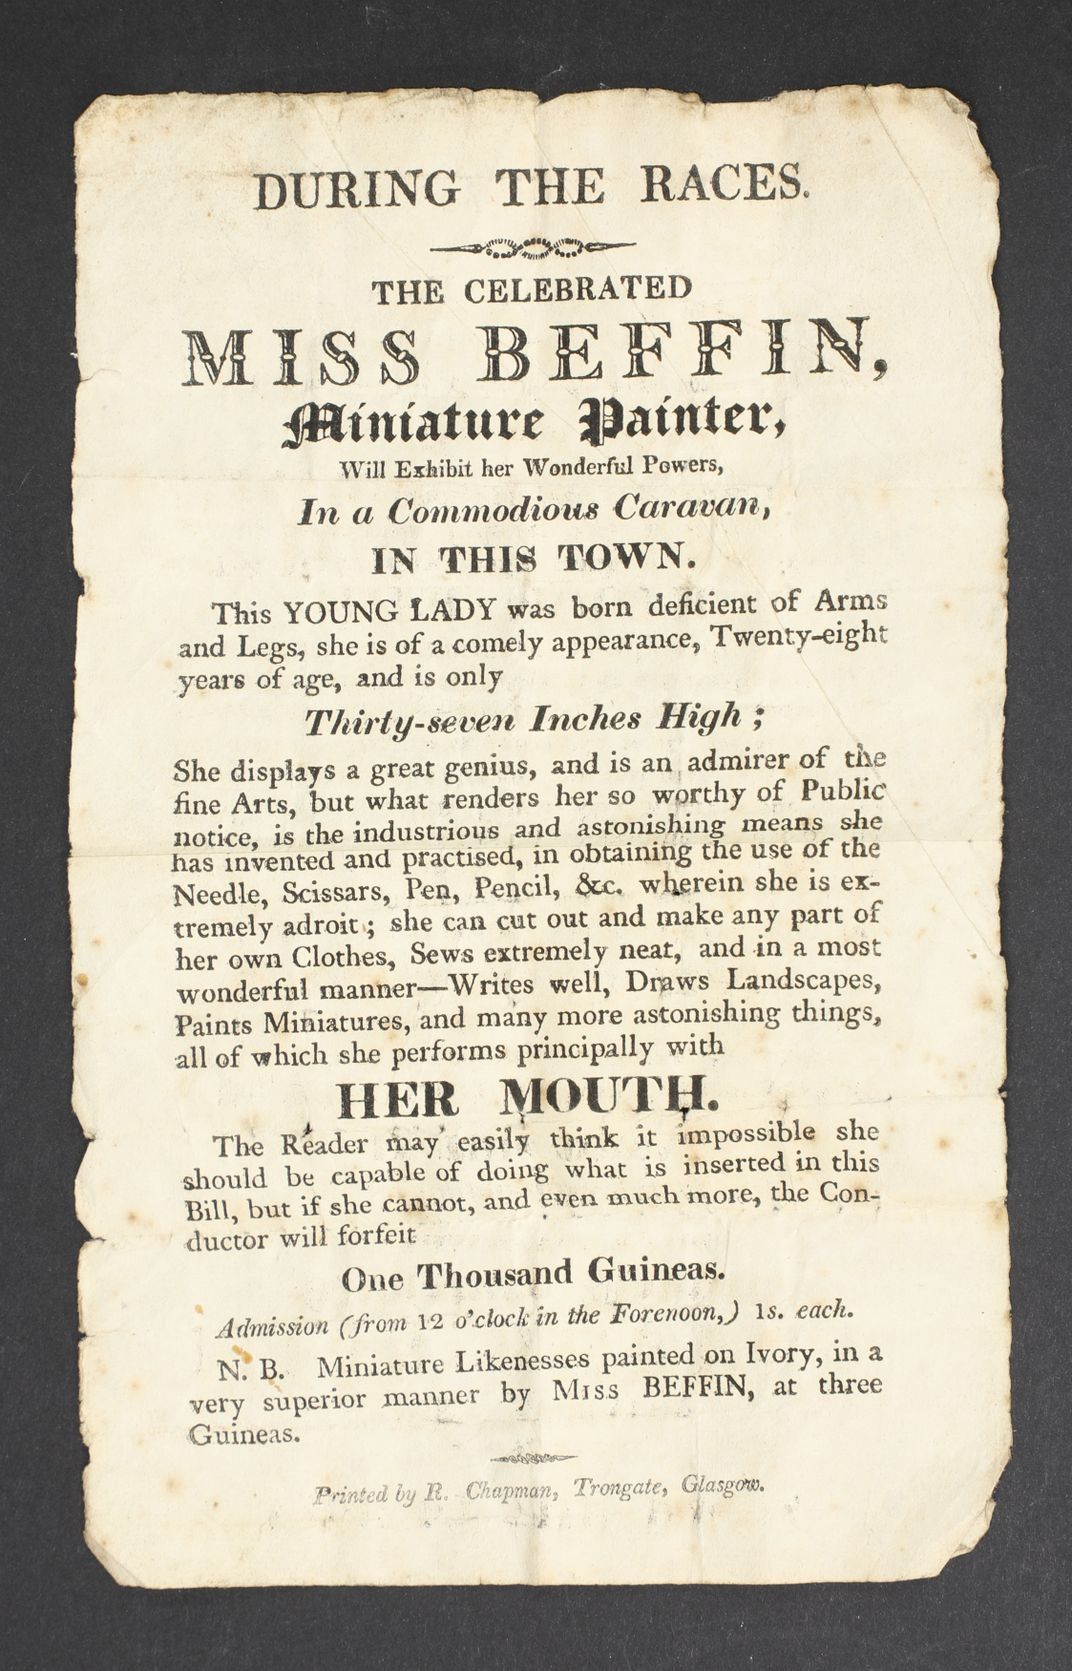 A handbill promoting Miss Biffin, Miniature Painter